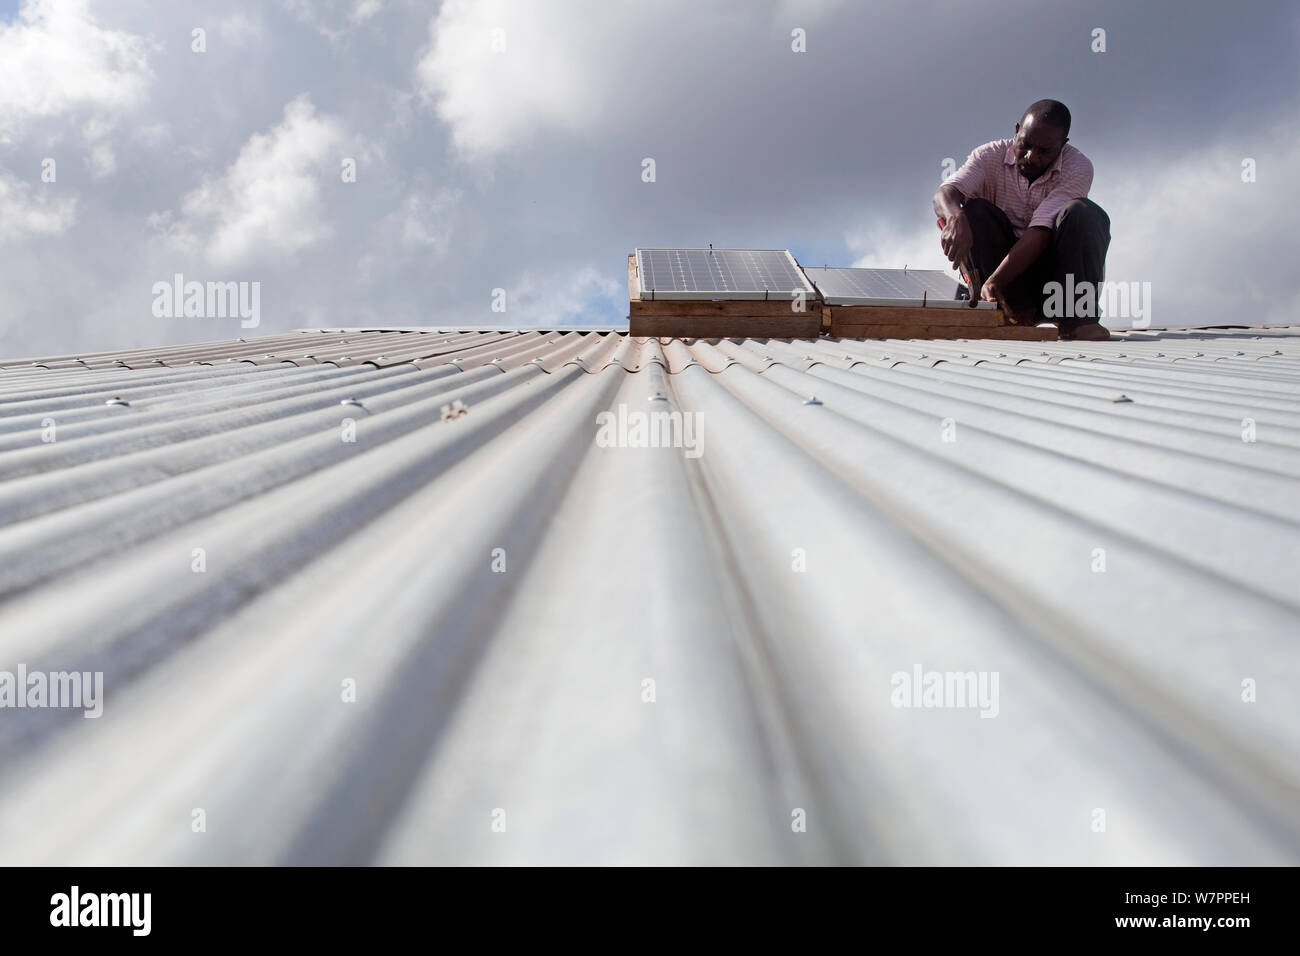 Fixation technicien panneau solaire sur un toit en tôle ondulée, Miono, région de la Tanzanie. Banque D'Images